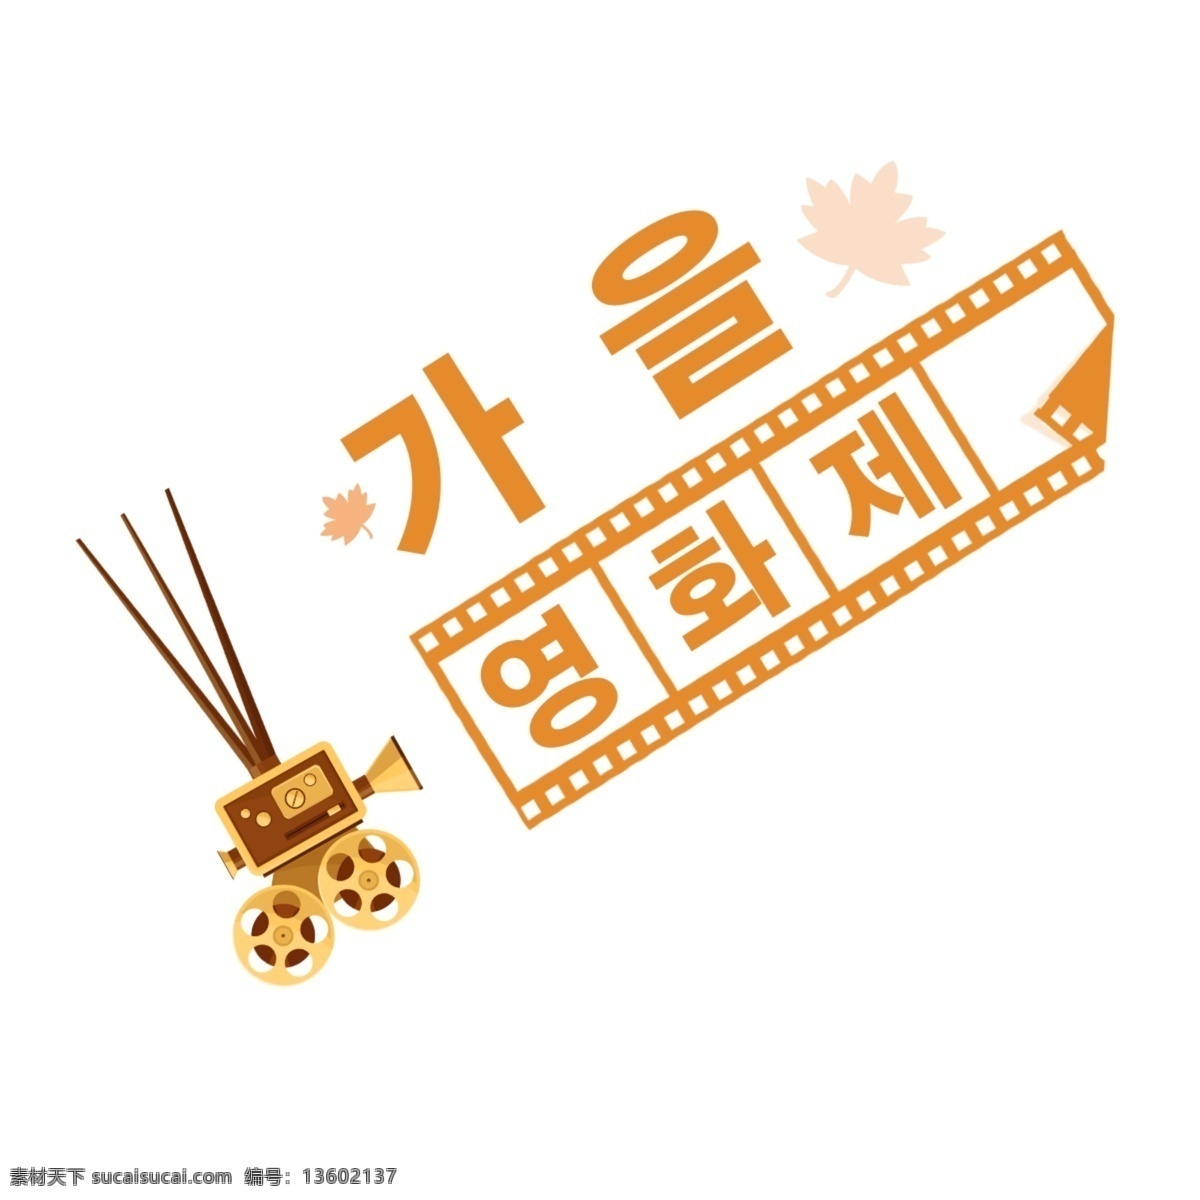 韩国 国际电影节 现场 韩国人 字形 英语和我 秋季 切片